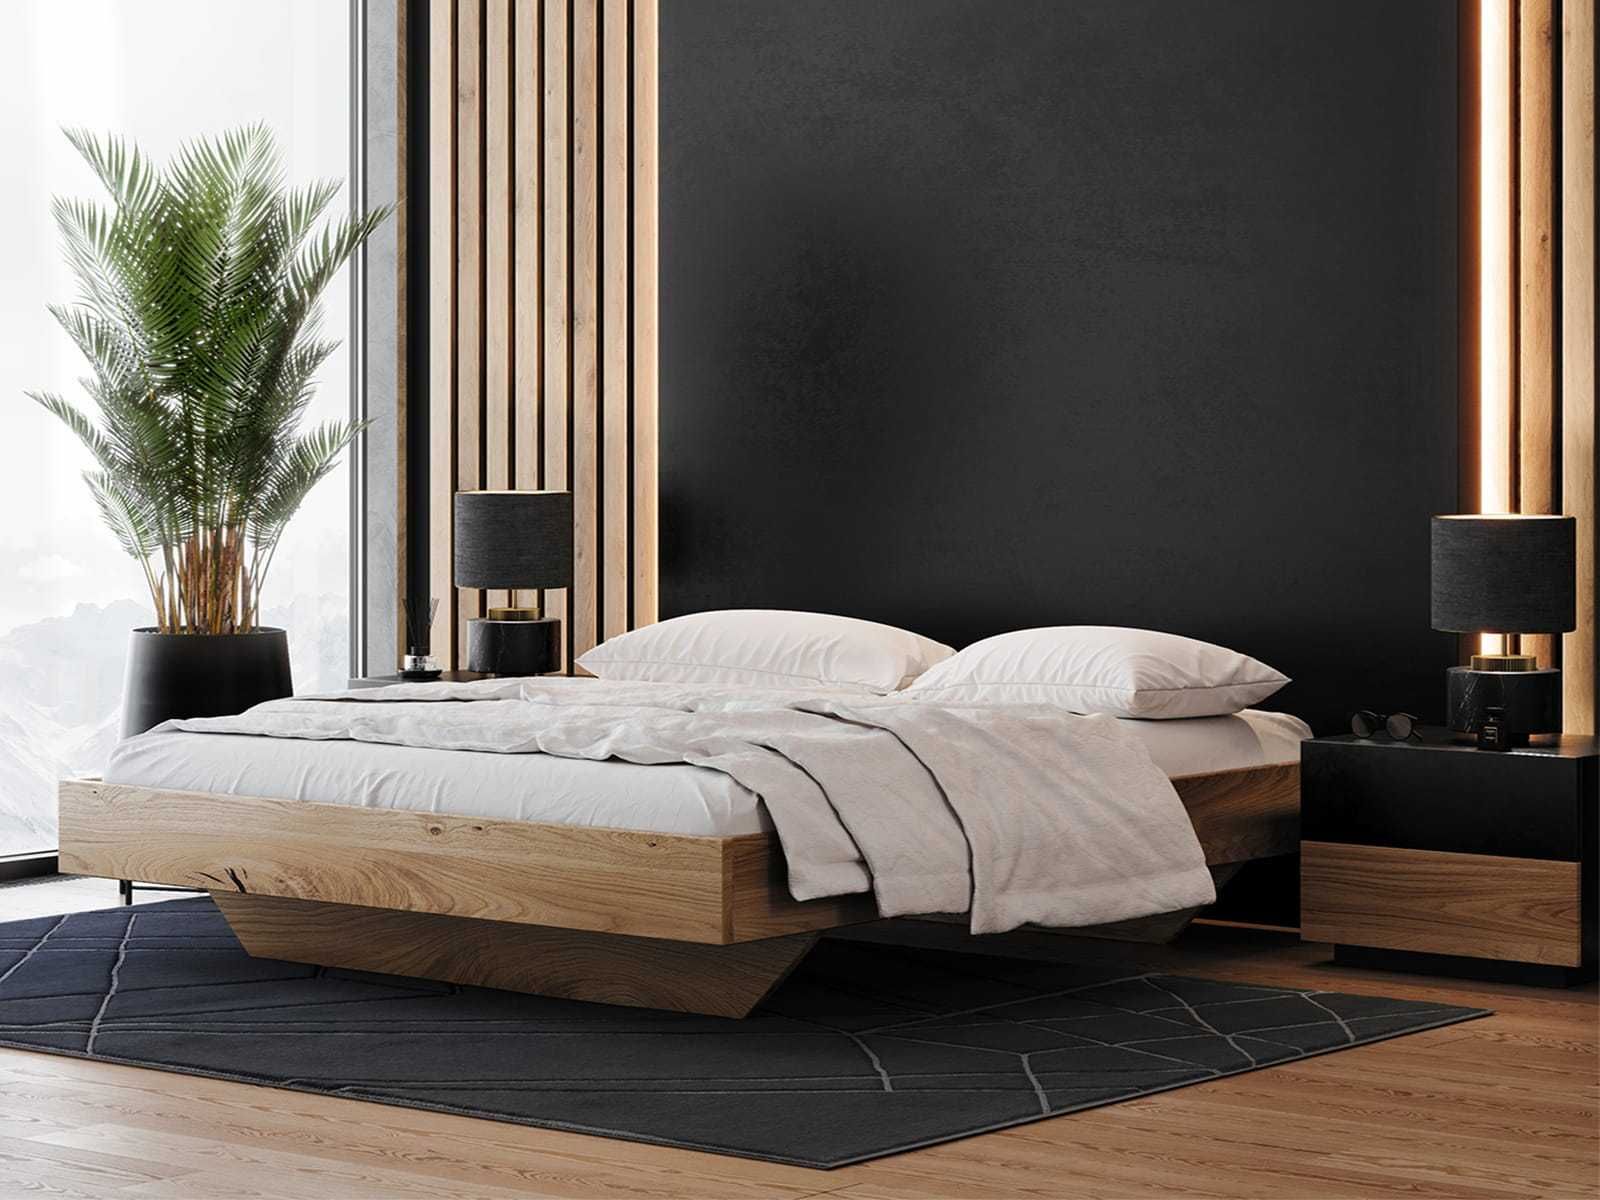 Łóżko drewniane Dębowe 180x200cm Lewitujące Bergamo, różne wymiary